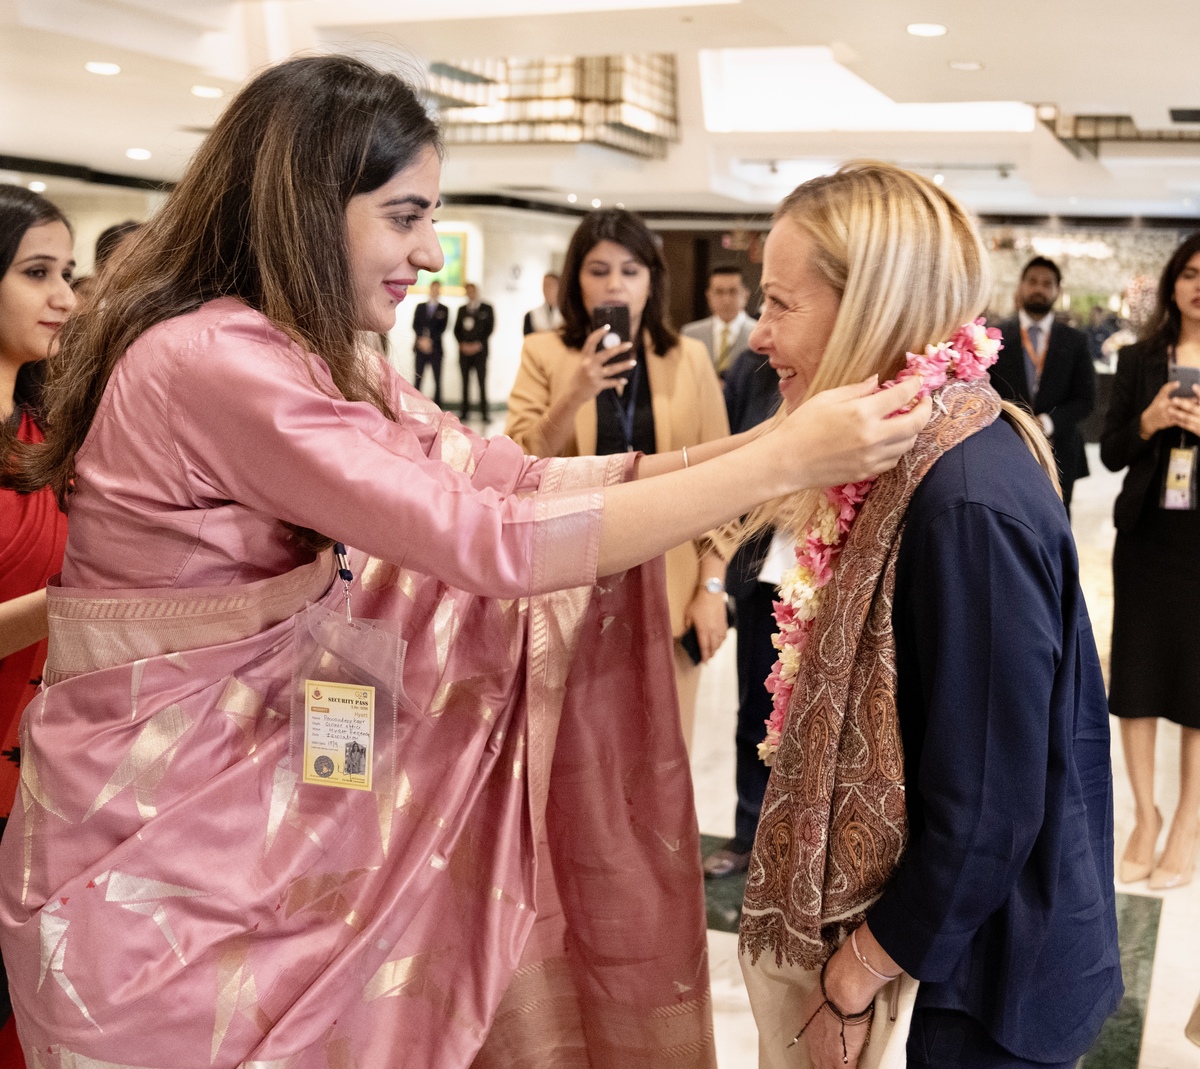 La Presidente Giorgia Meloni in India per il G20